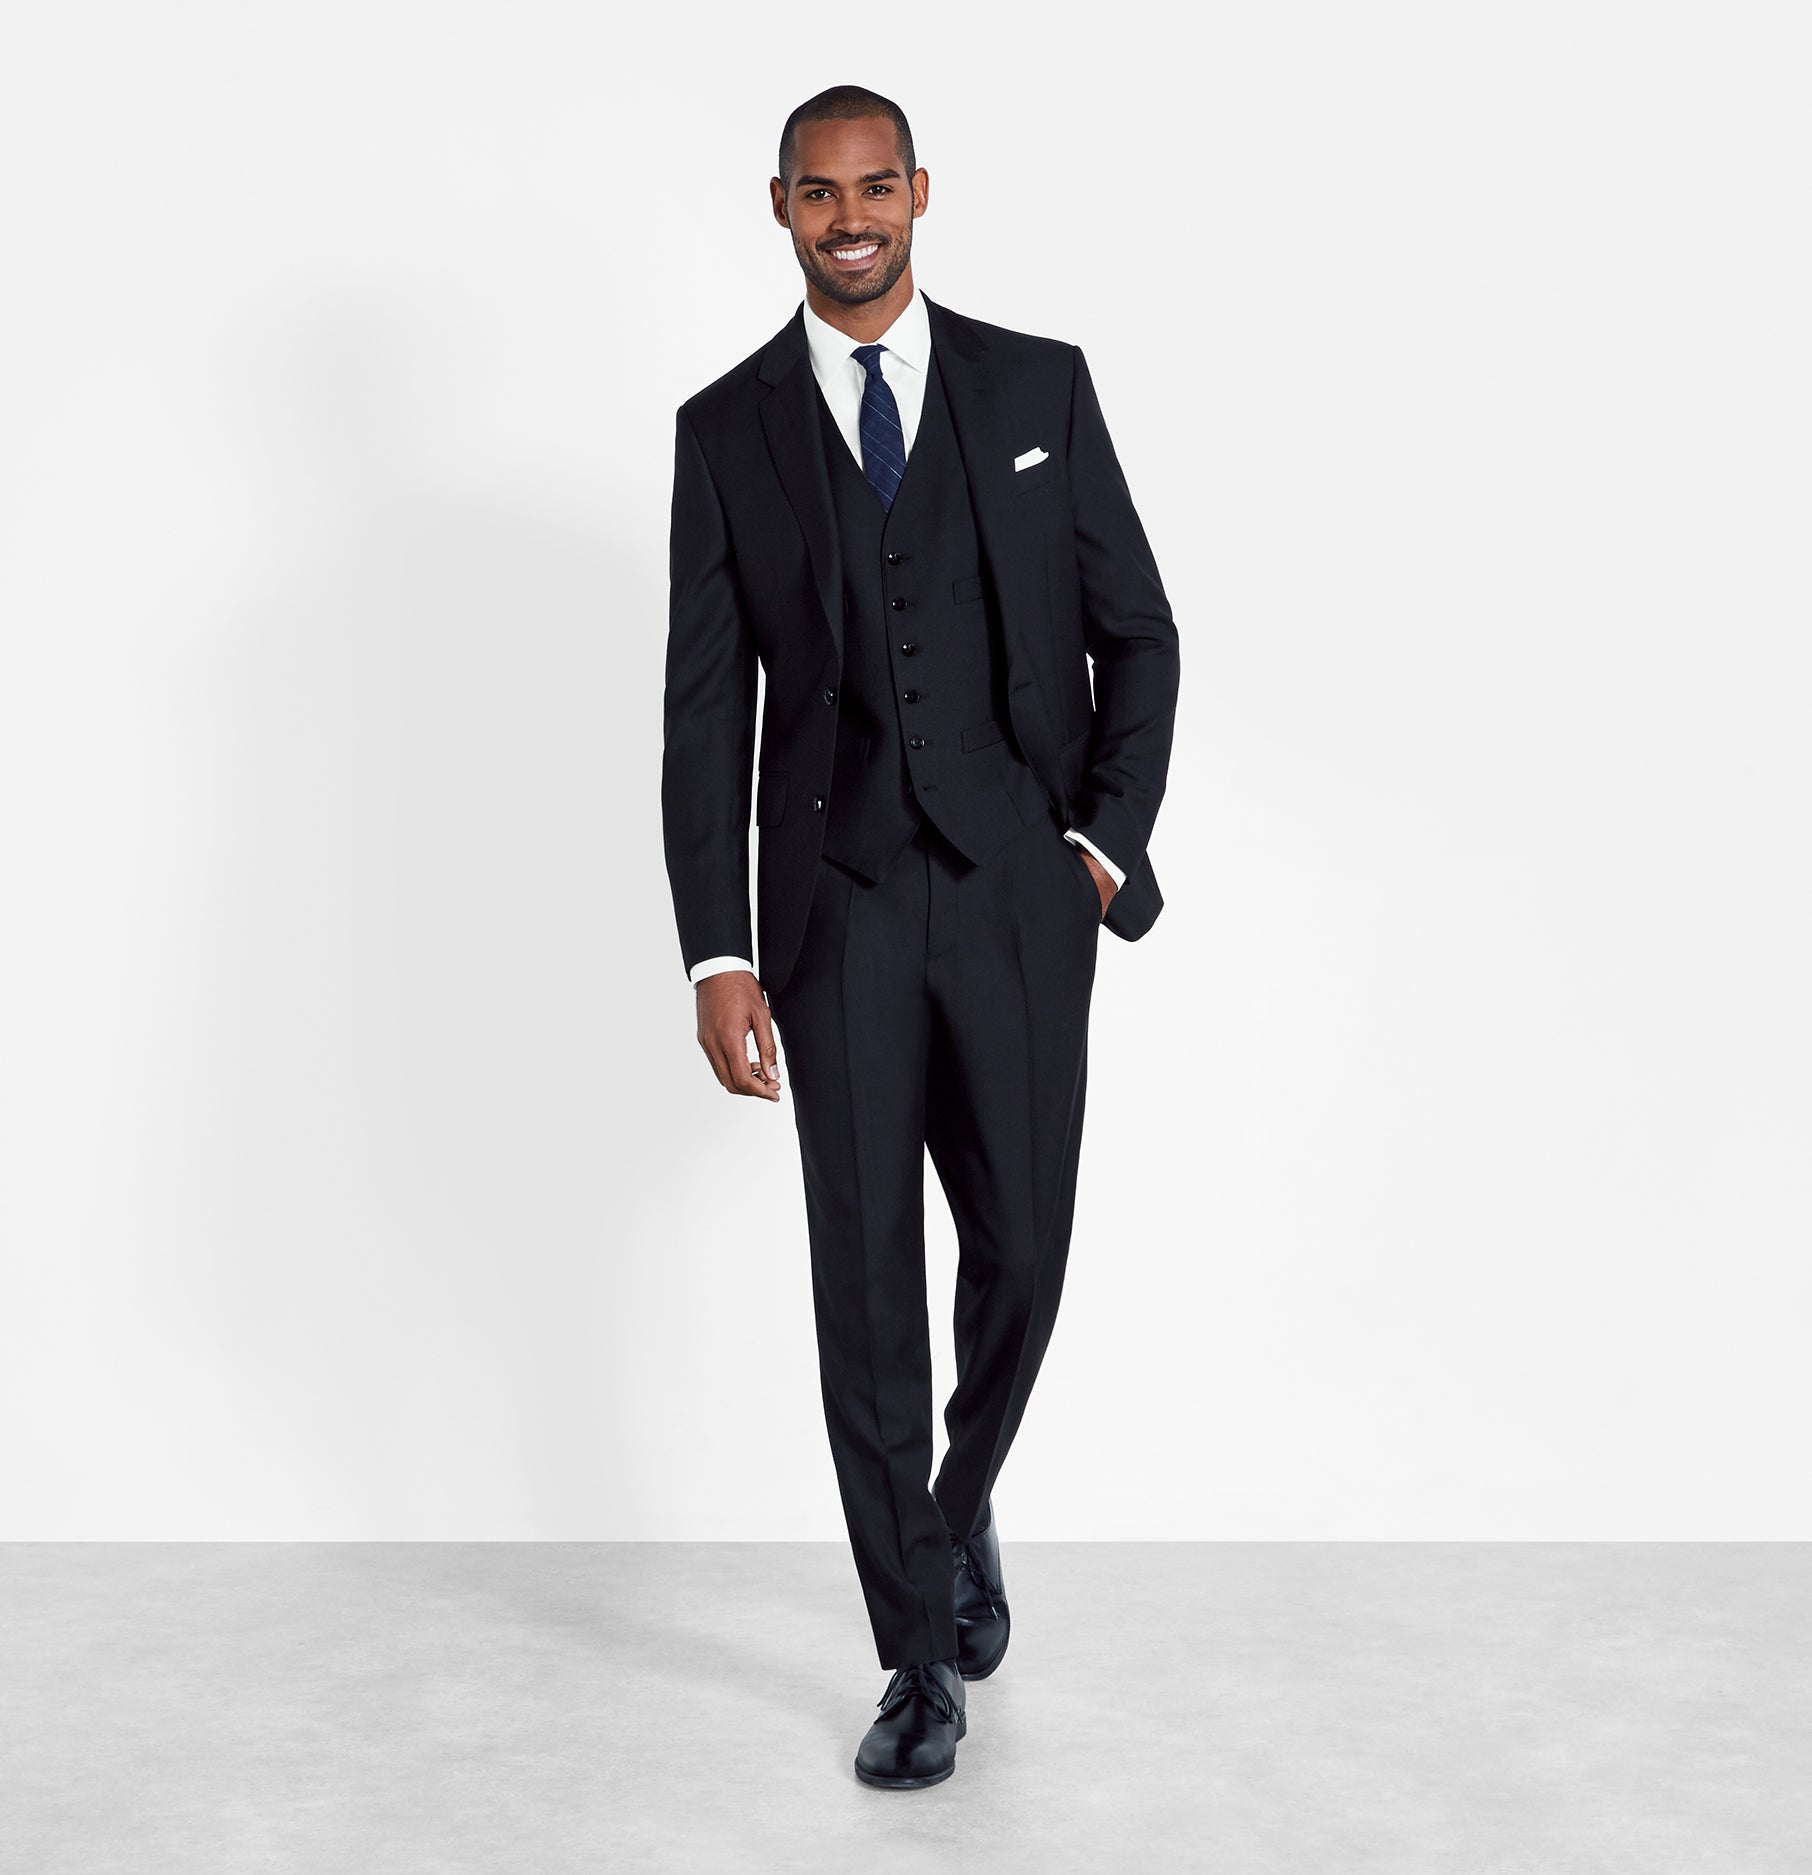 All Black Suit With Vest | vlr.eng.br